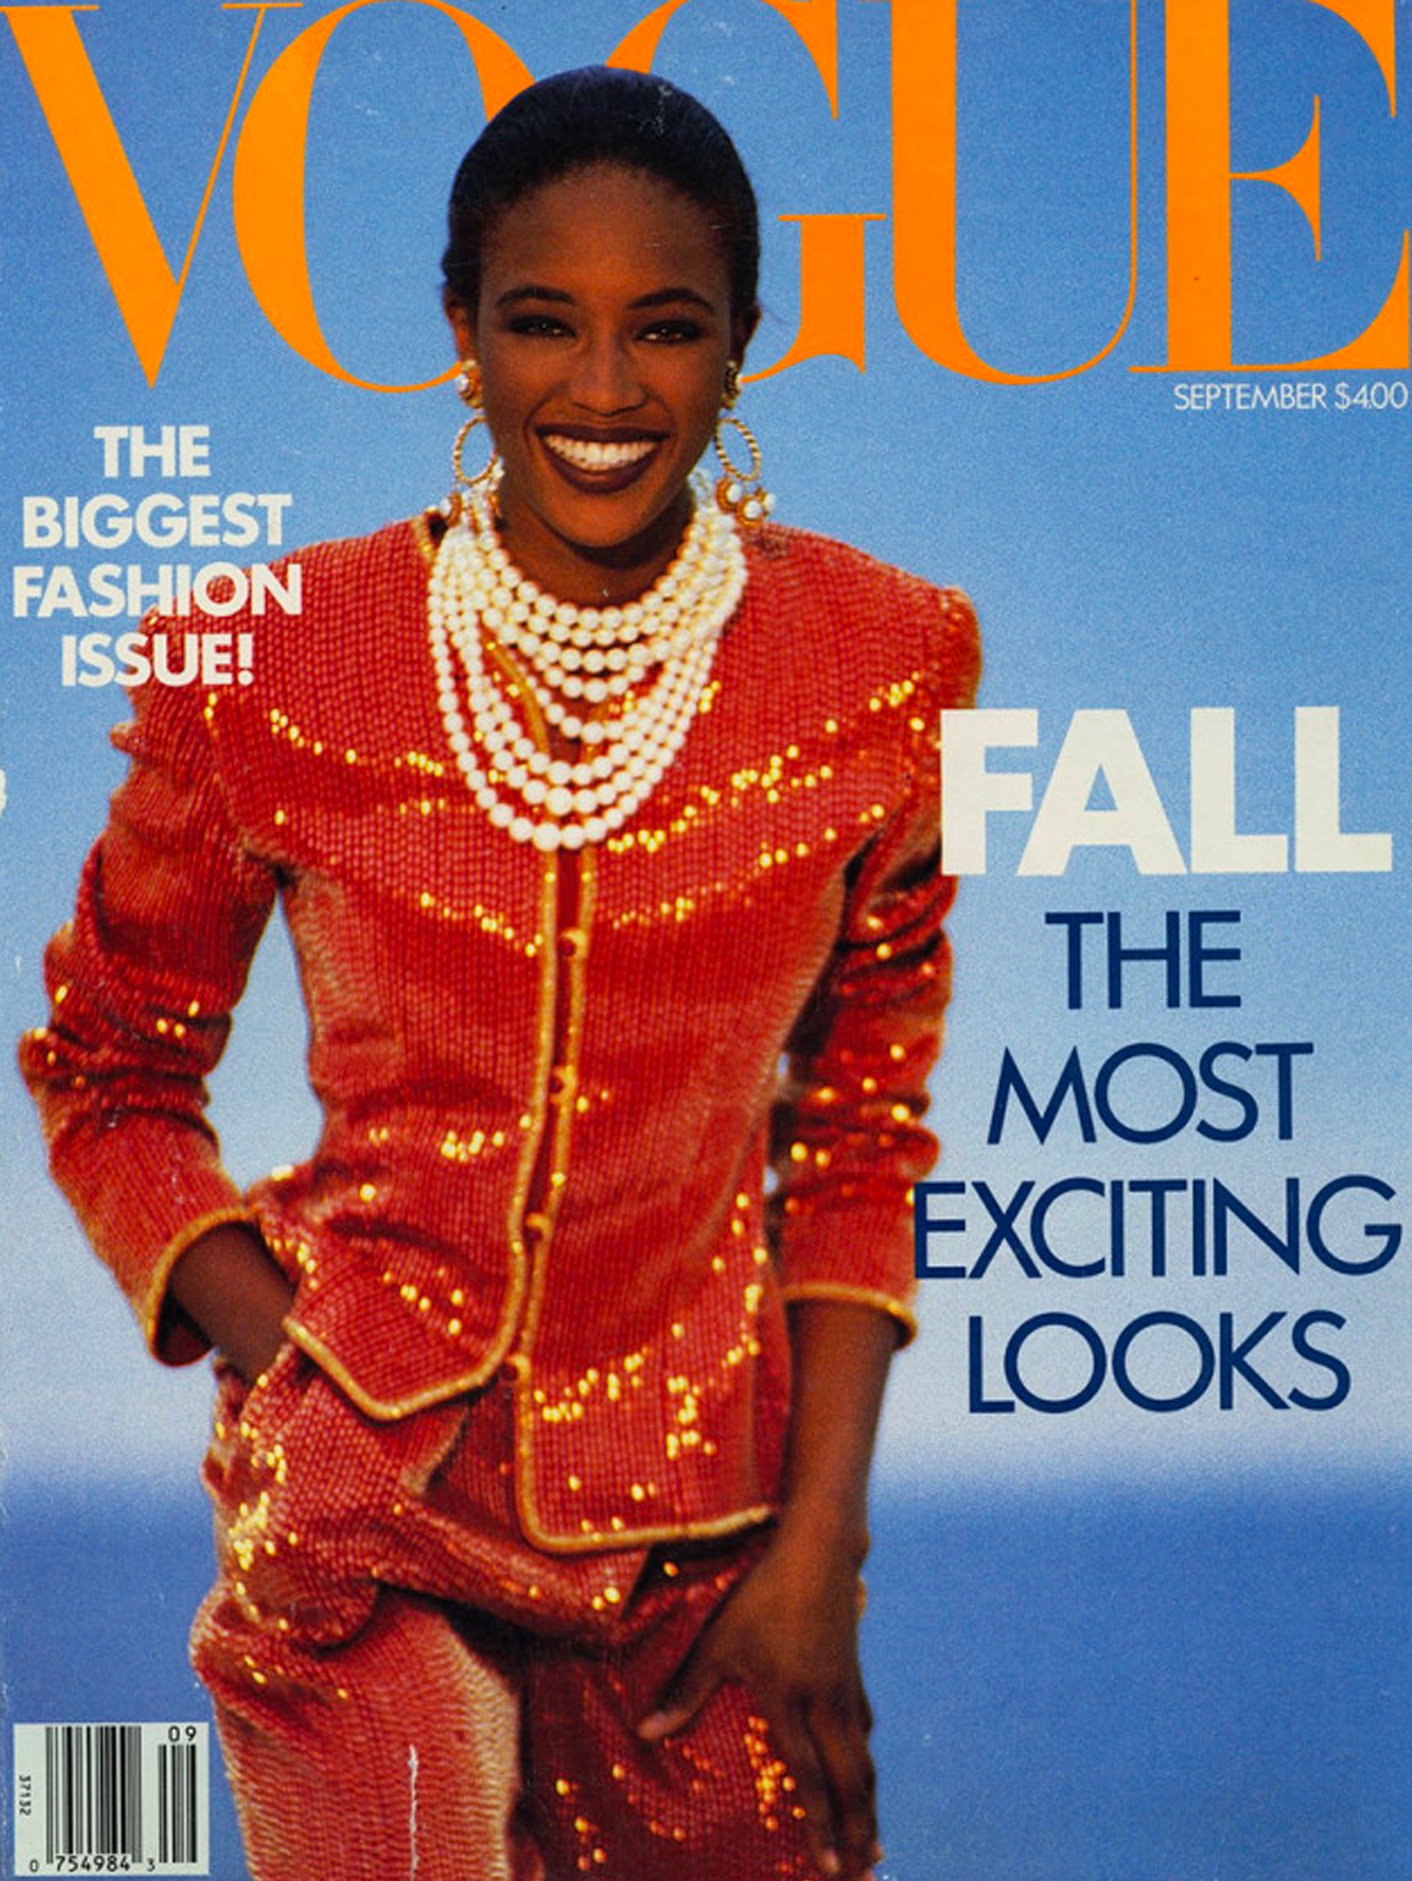 Siêu mẫu Naomi Campbell từng là người da màu đầu tiên được lên bìa Vogue vào năm 1989.